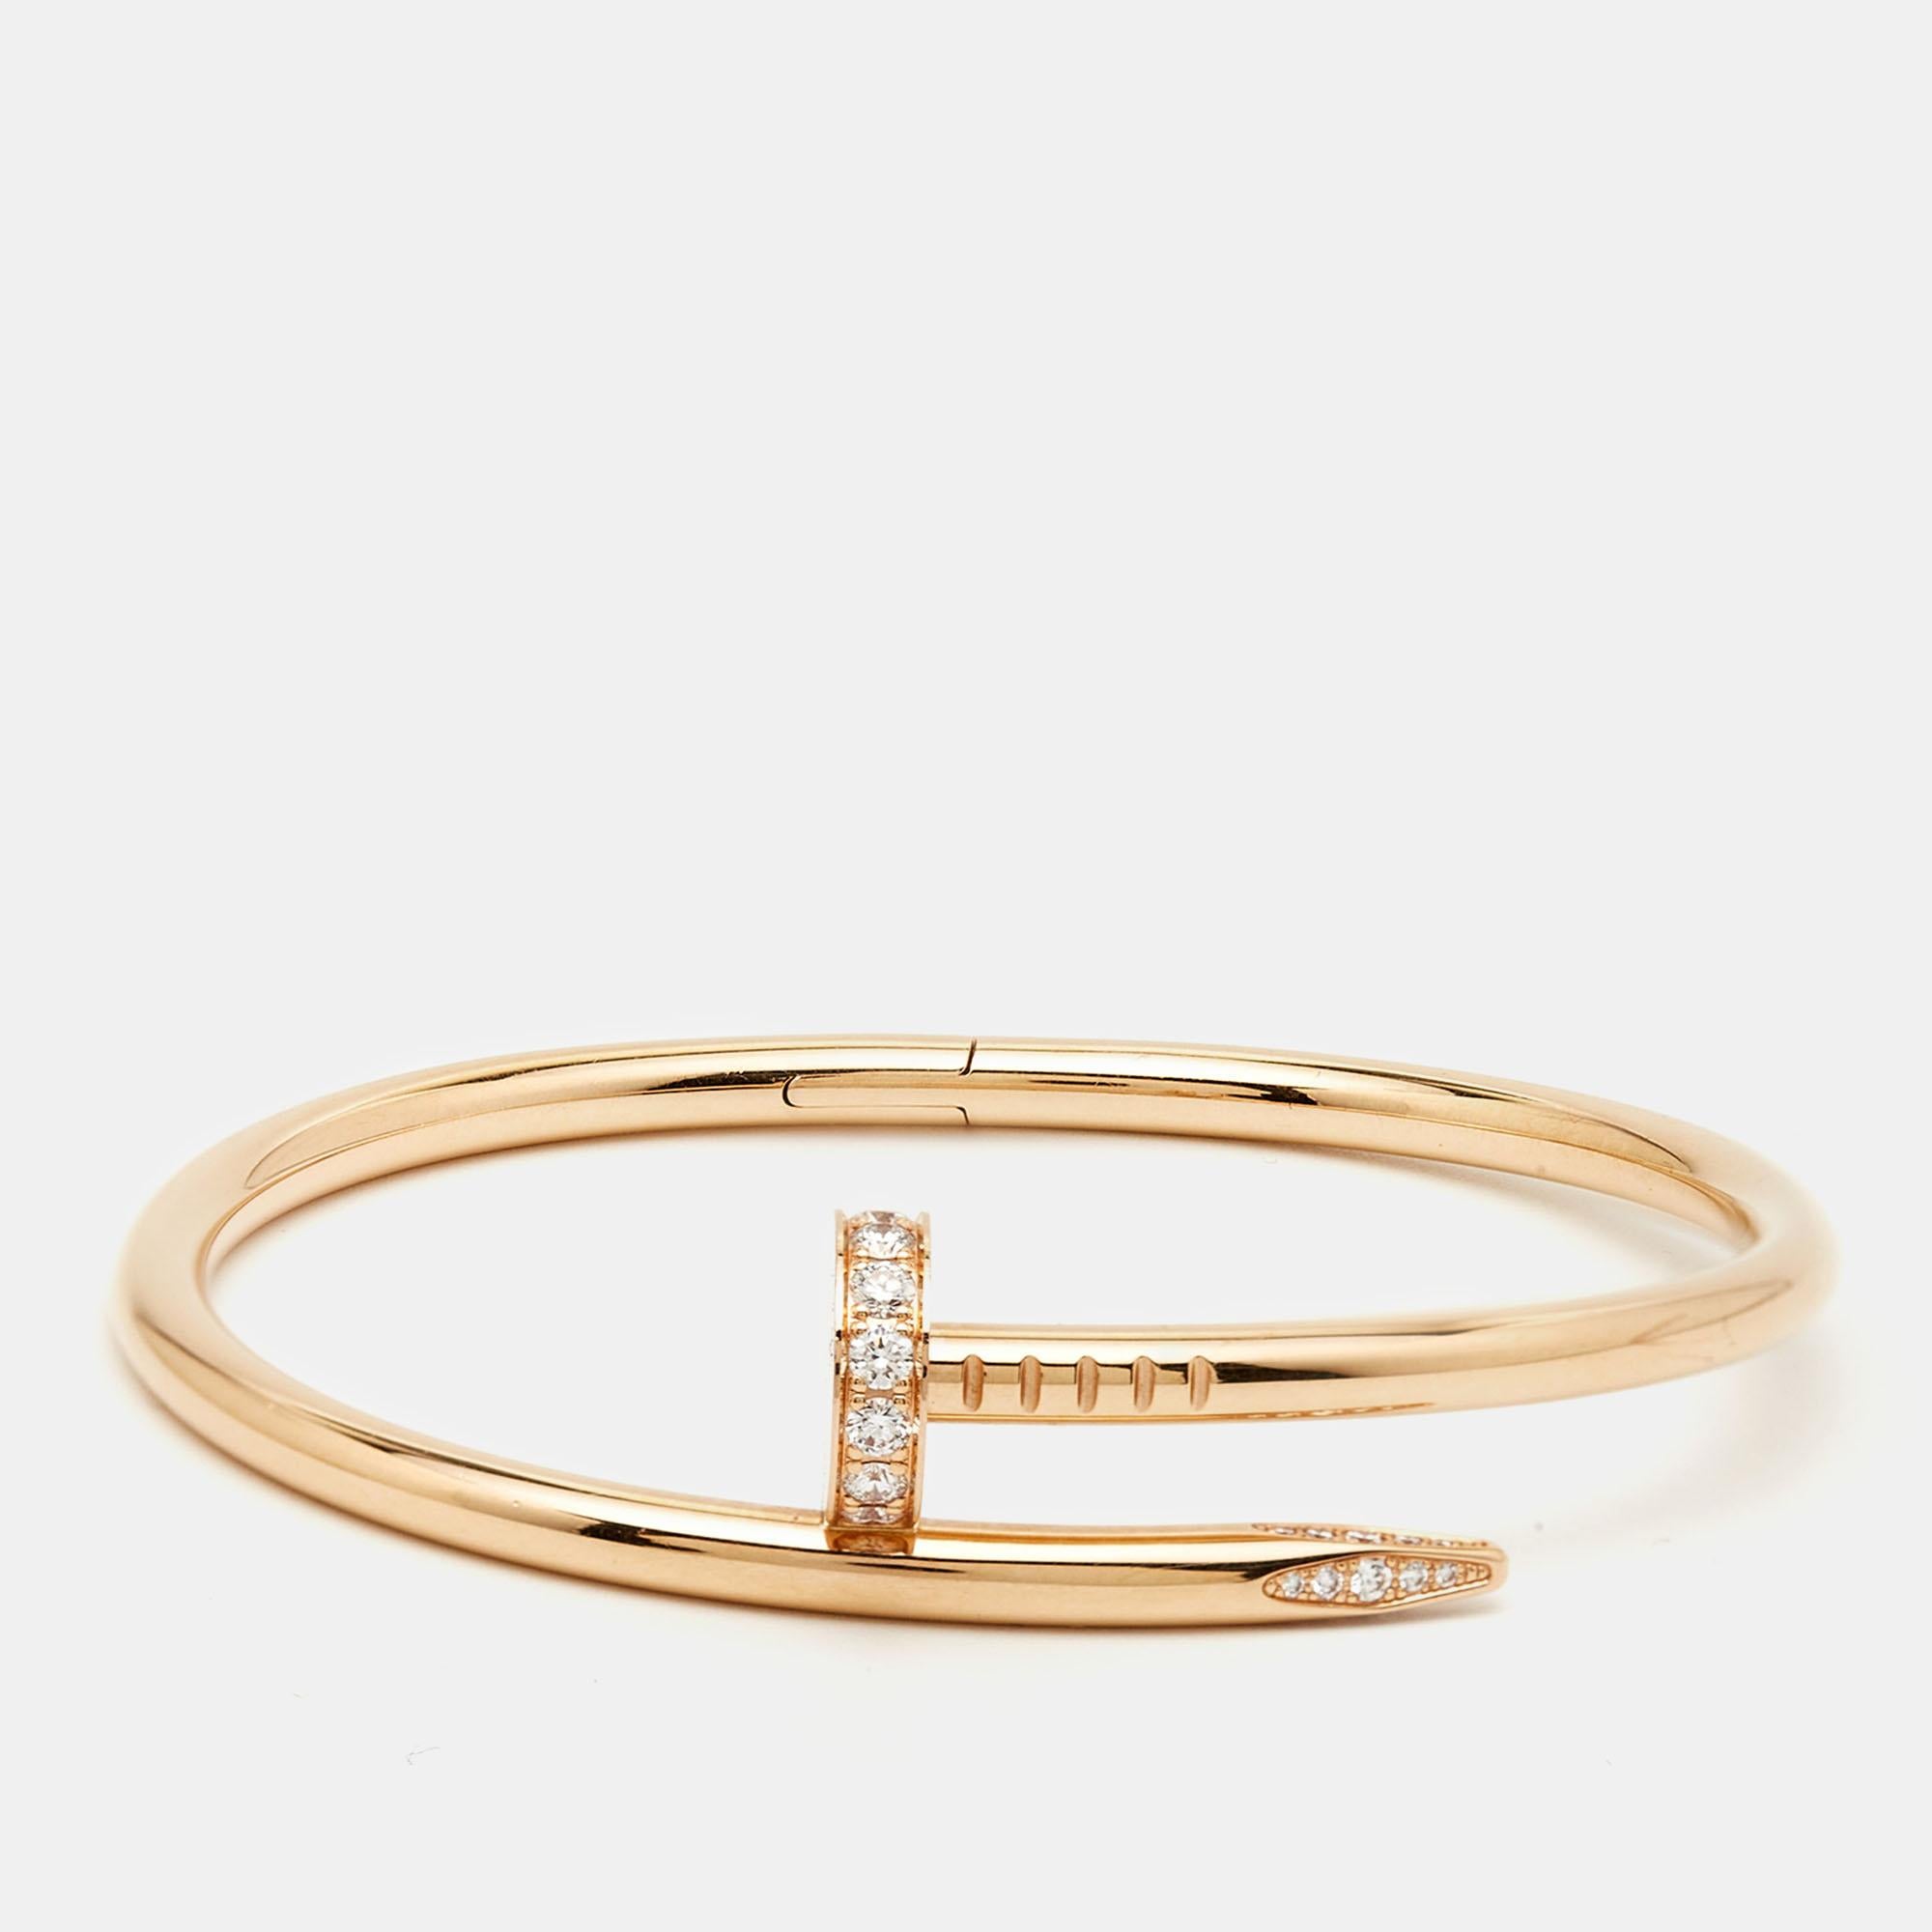 Das Armband Juste Un Clou von Cartier ist ein kultiges und luxuriöses Schmuckstück. Das schlichte und minimalistische Design aus glänzendem 18-karätigem Roségold und Diamanten fängt die Essenz eines Nagels ein, der in ein elegantes und